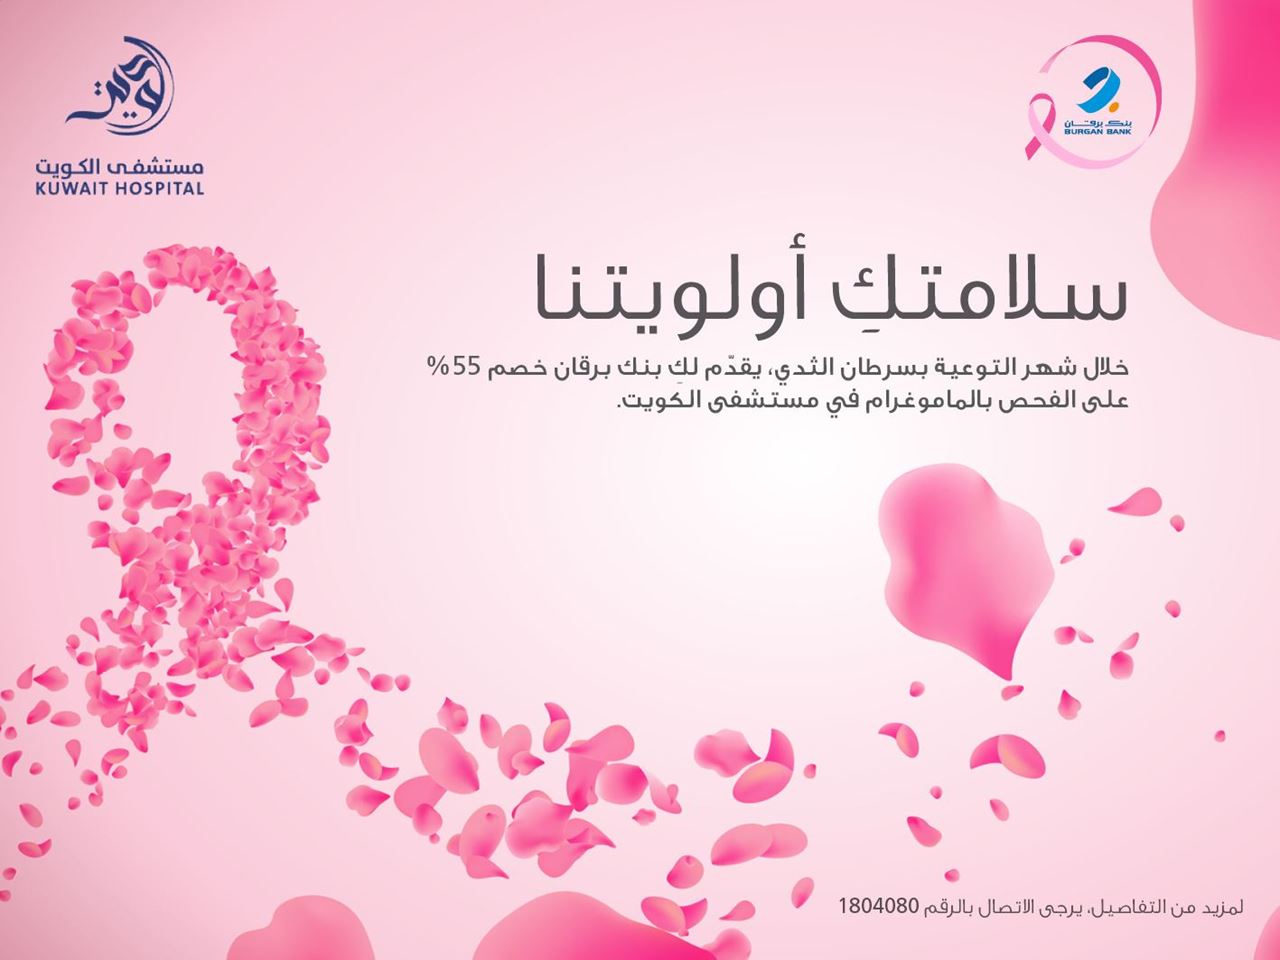 بنك برقان يطلق حملة خاصة بشهر التوعية بسرطان الثدي بالتعاون مع مستشفى الكويت